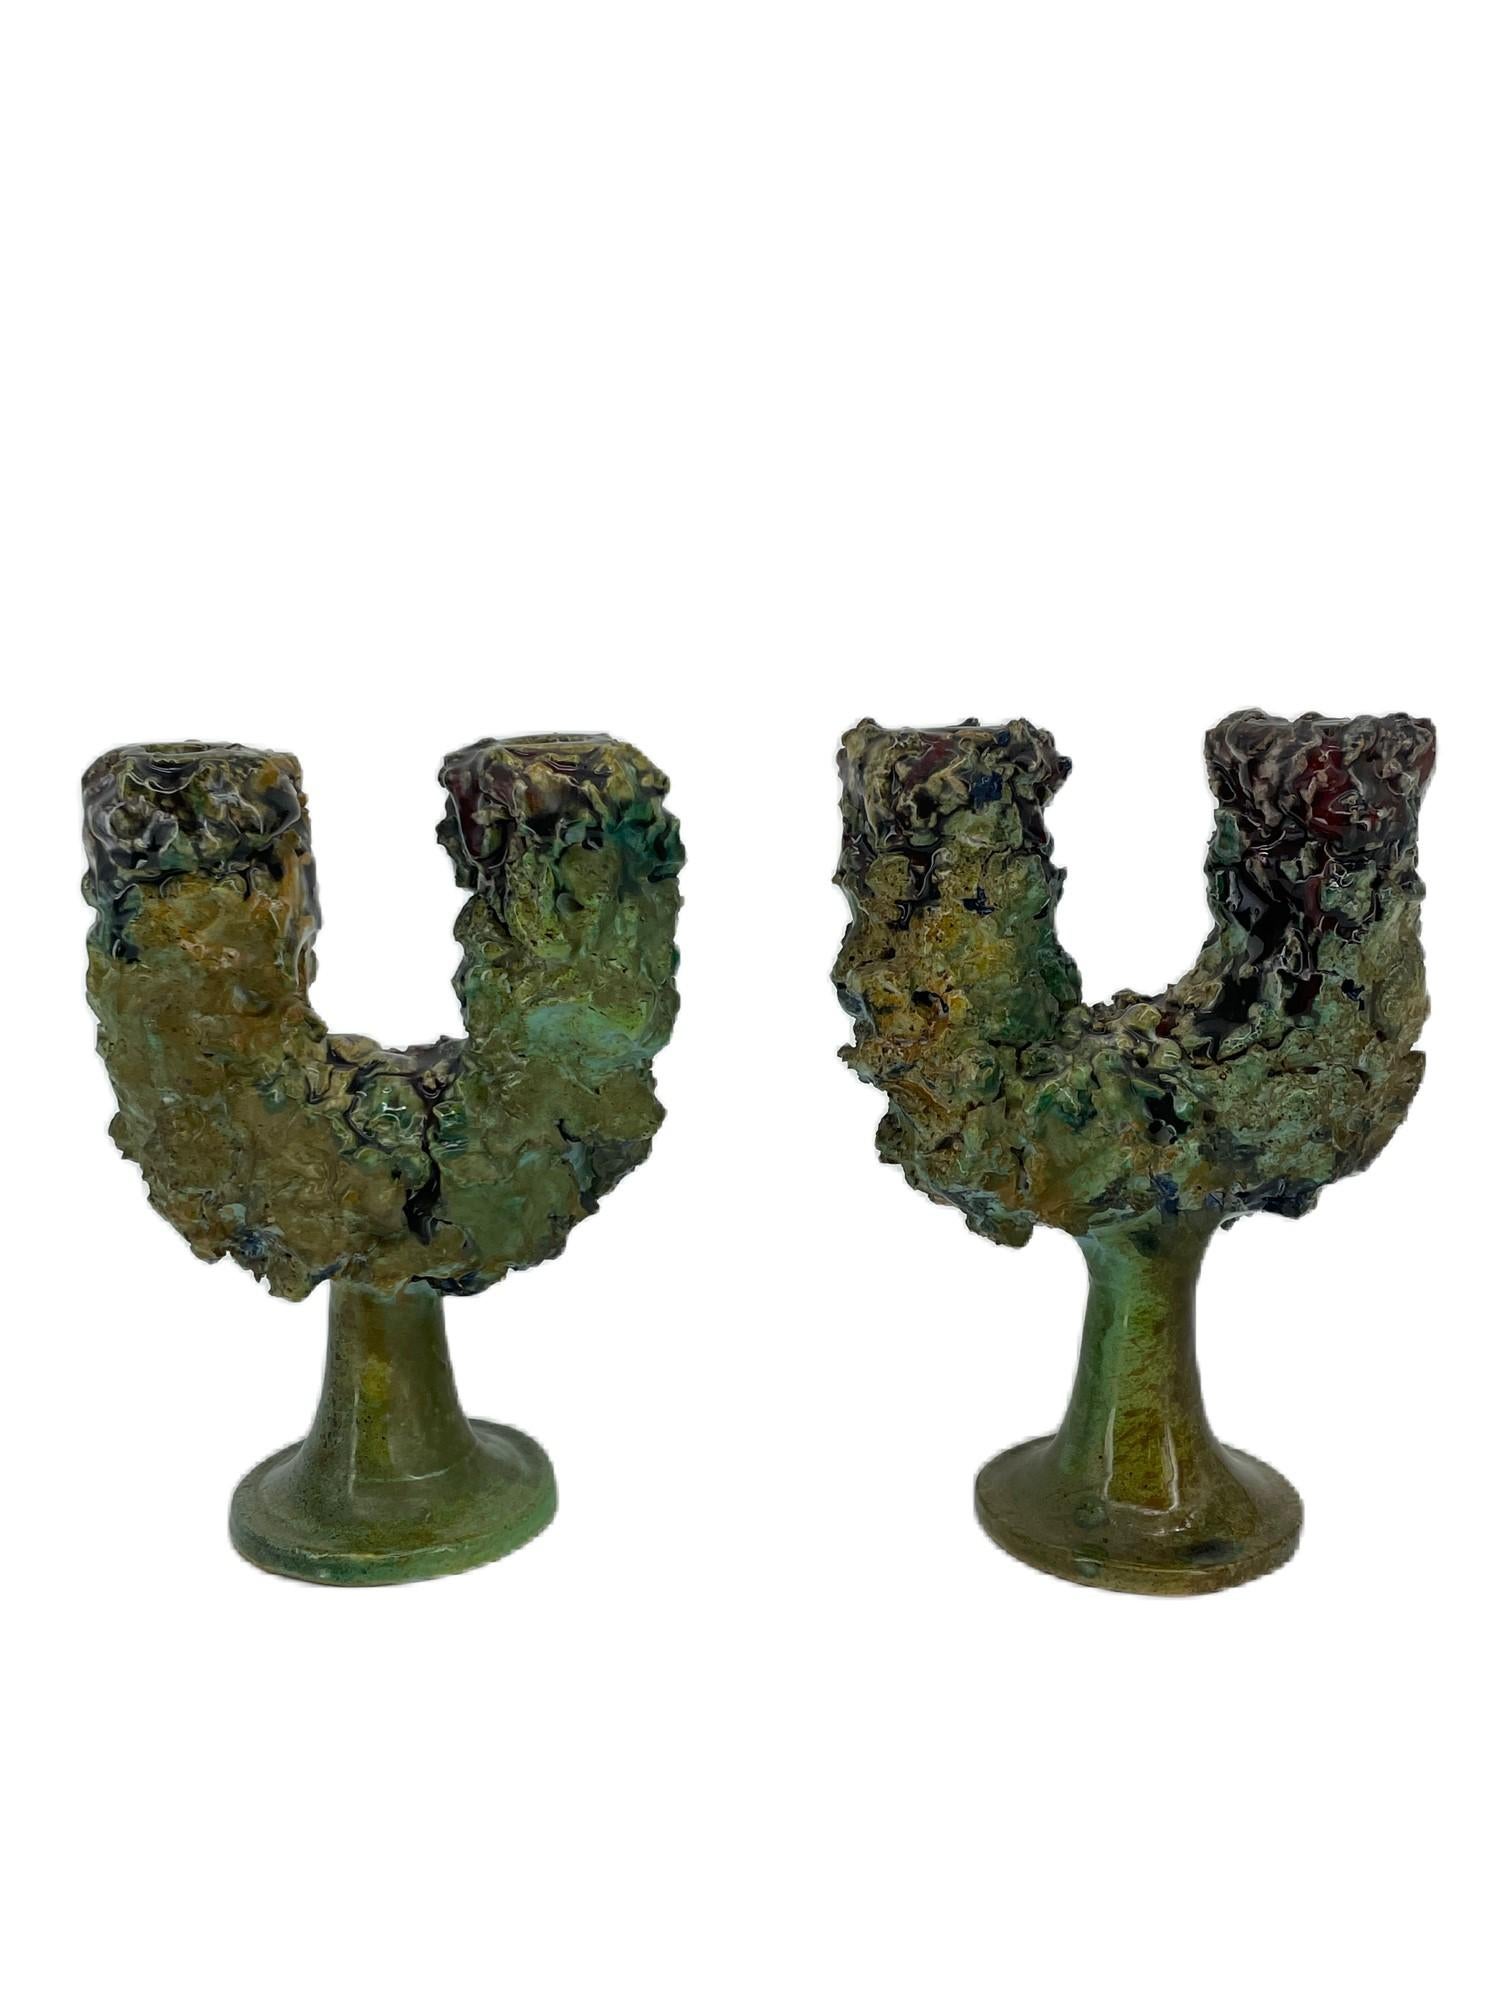 Ein Paar Keramik-Kandelaber im brutalistischen Stil der 1960er Jahre.
Signiert CCA Caltagirone, von ausgezeichneter Handwerkskunst und in sehr gutem Zustand.
Sehr ungewöhnliche und seltene Gegenstände.
Caltagirone
Caltagirone - farbenfrohe